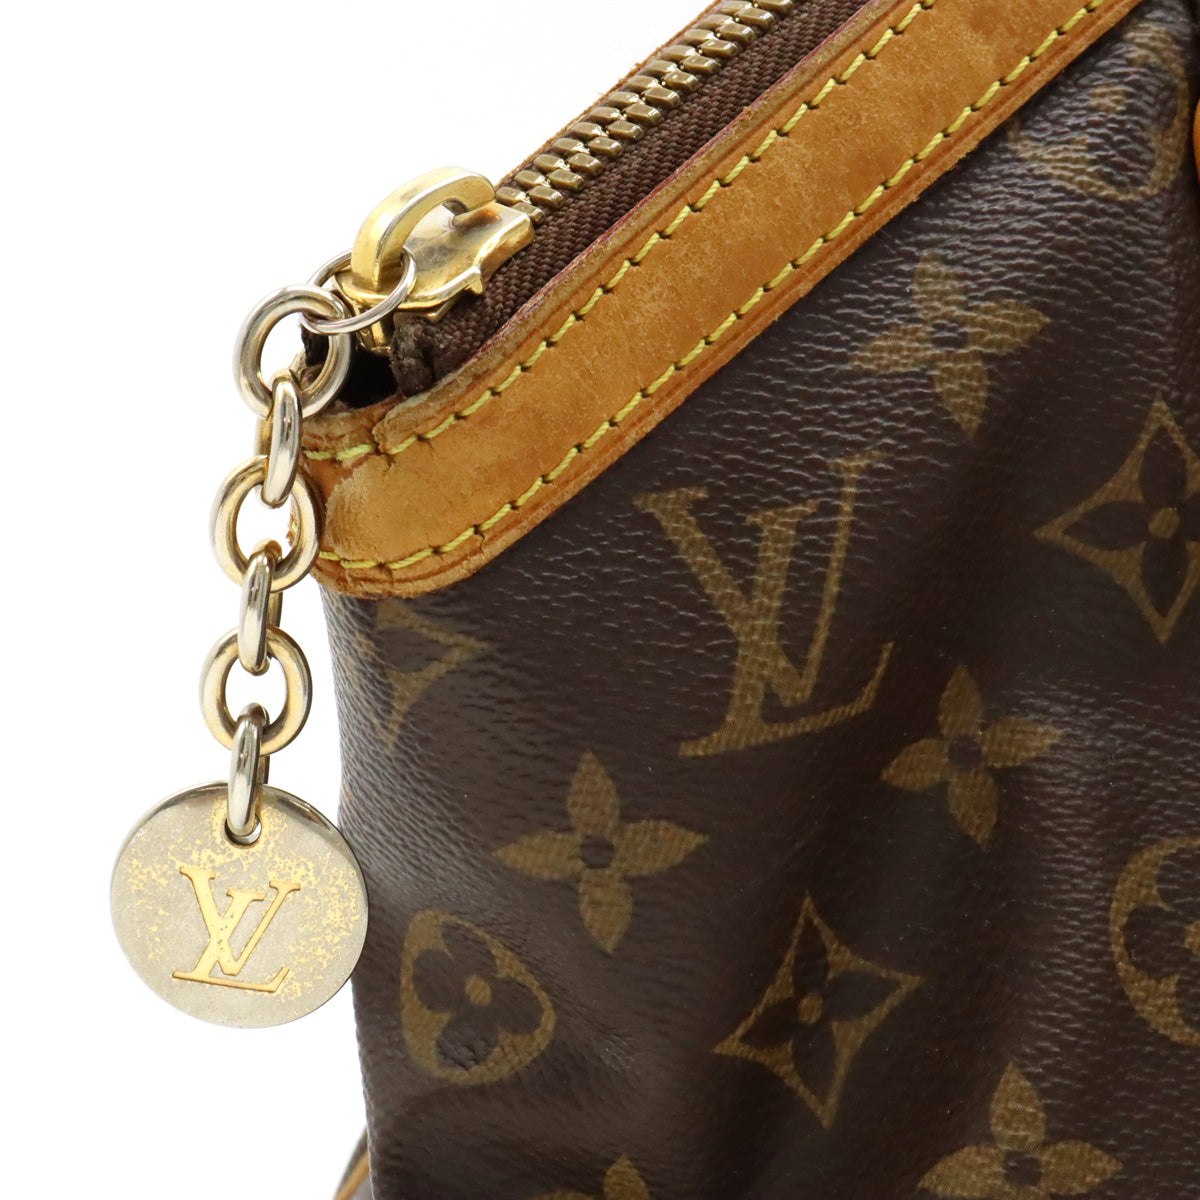 Louis Vuitton Louis Vuitton Monogram Tivoli GM  Bag Shoulder Bag Shoulder Bag M40144